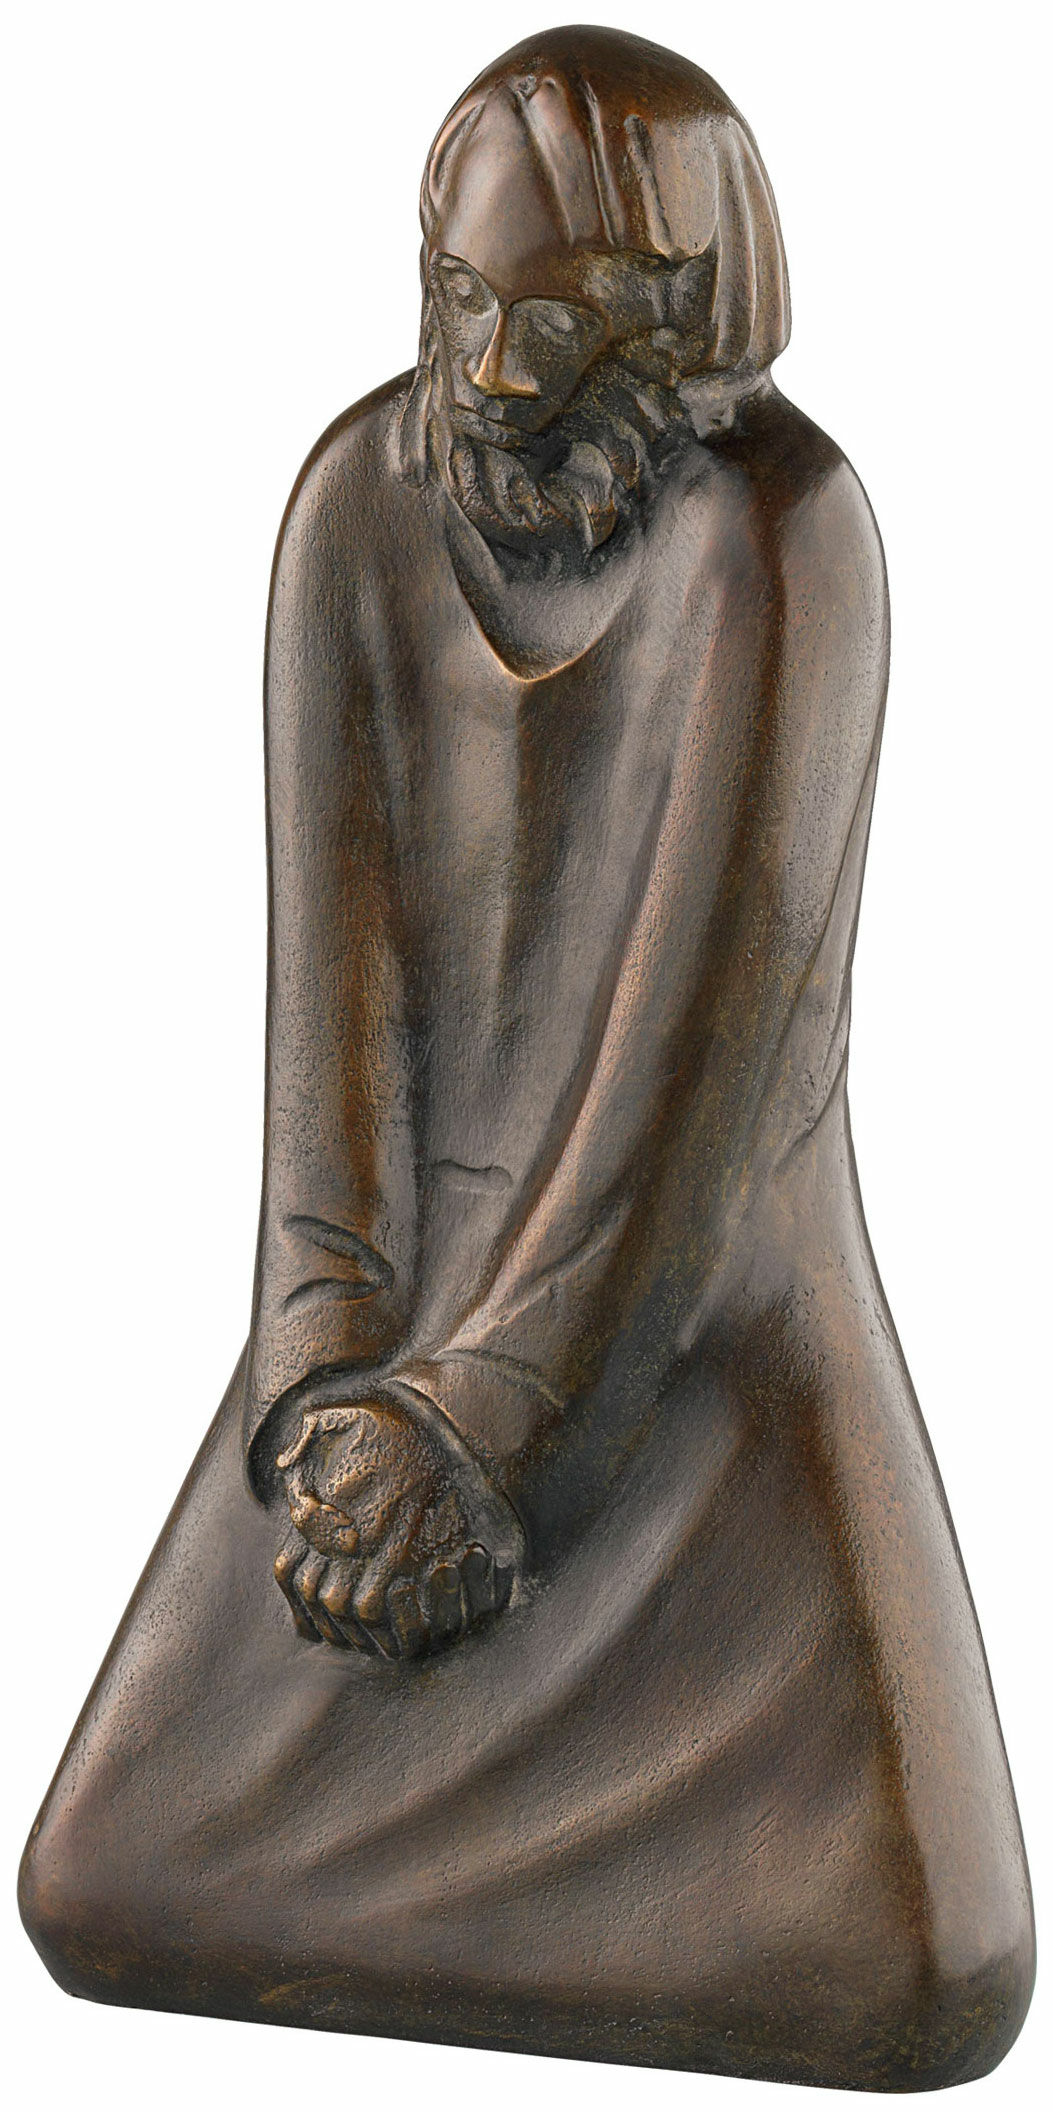 Skulptur "Tvivleren" (1931), bronzereduktion von Ernst Barlach